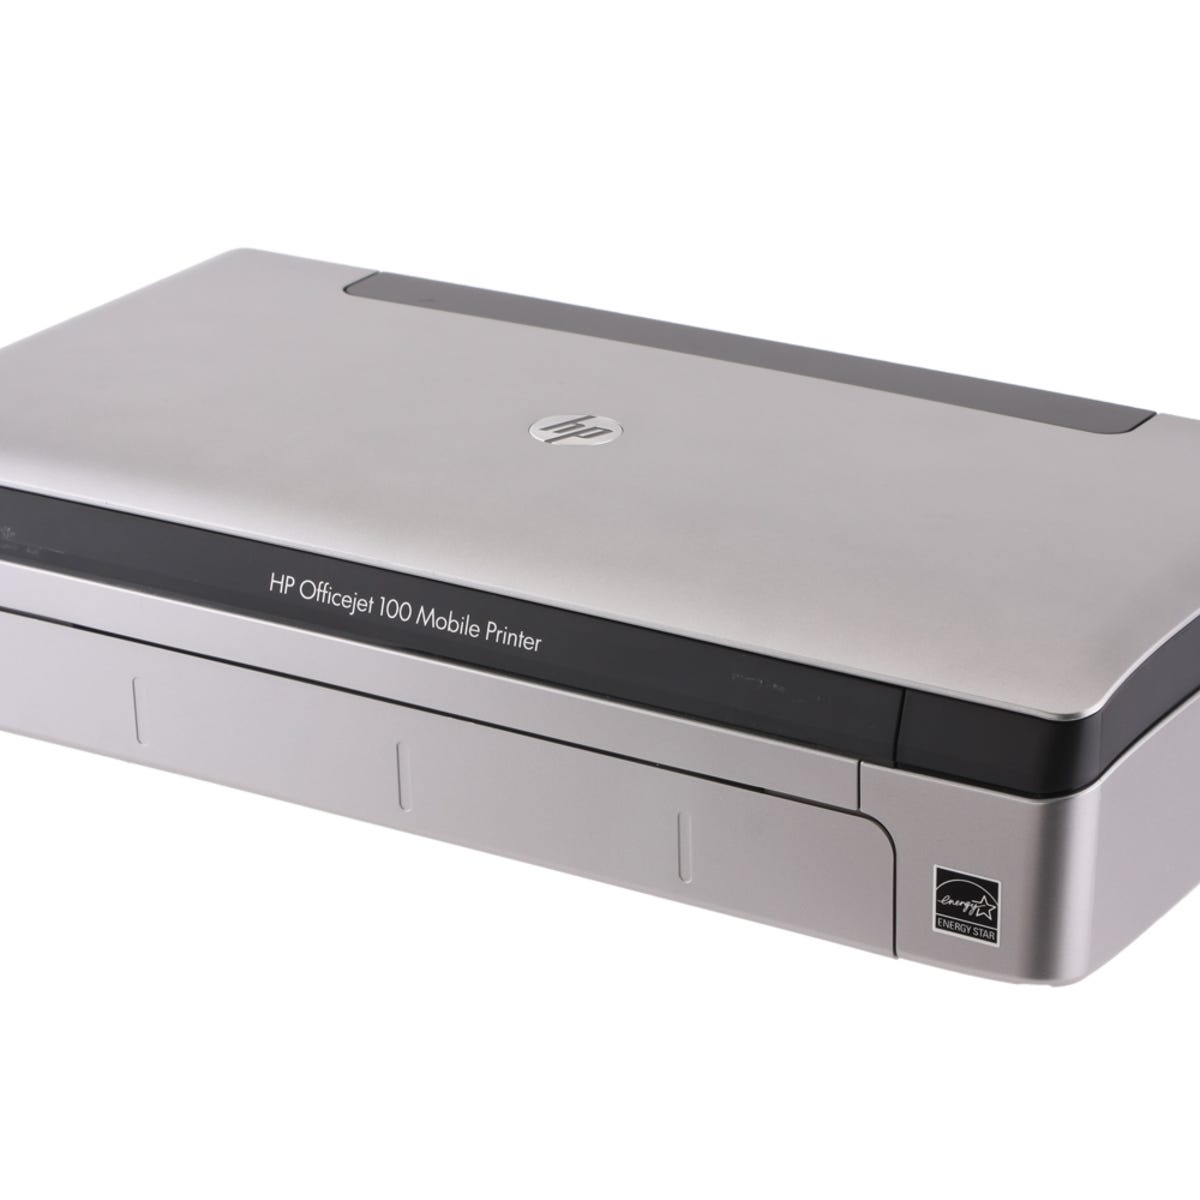 Mellem tage ned børste HP Officejet 100 Mobile Printer review